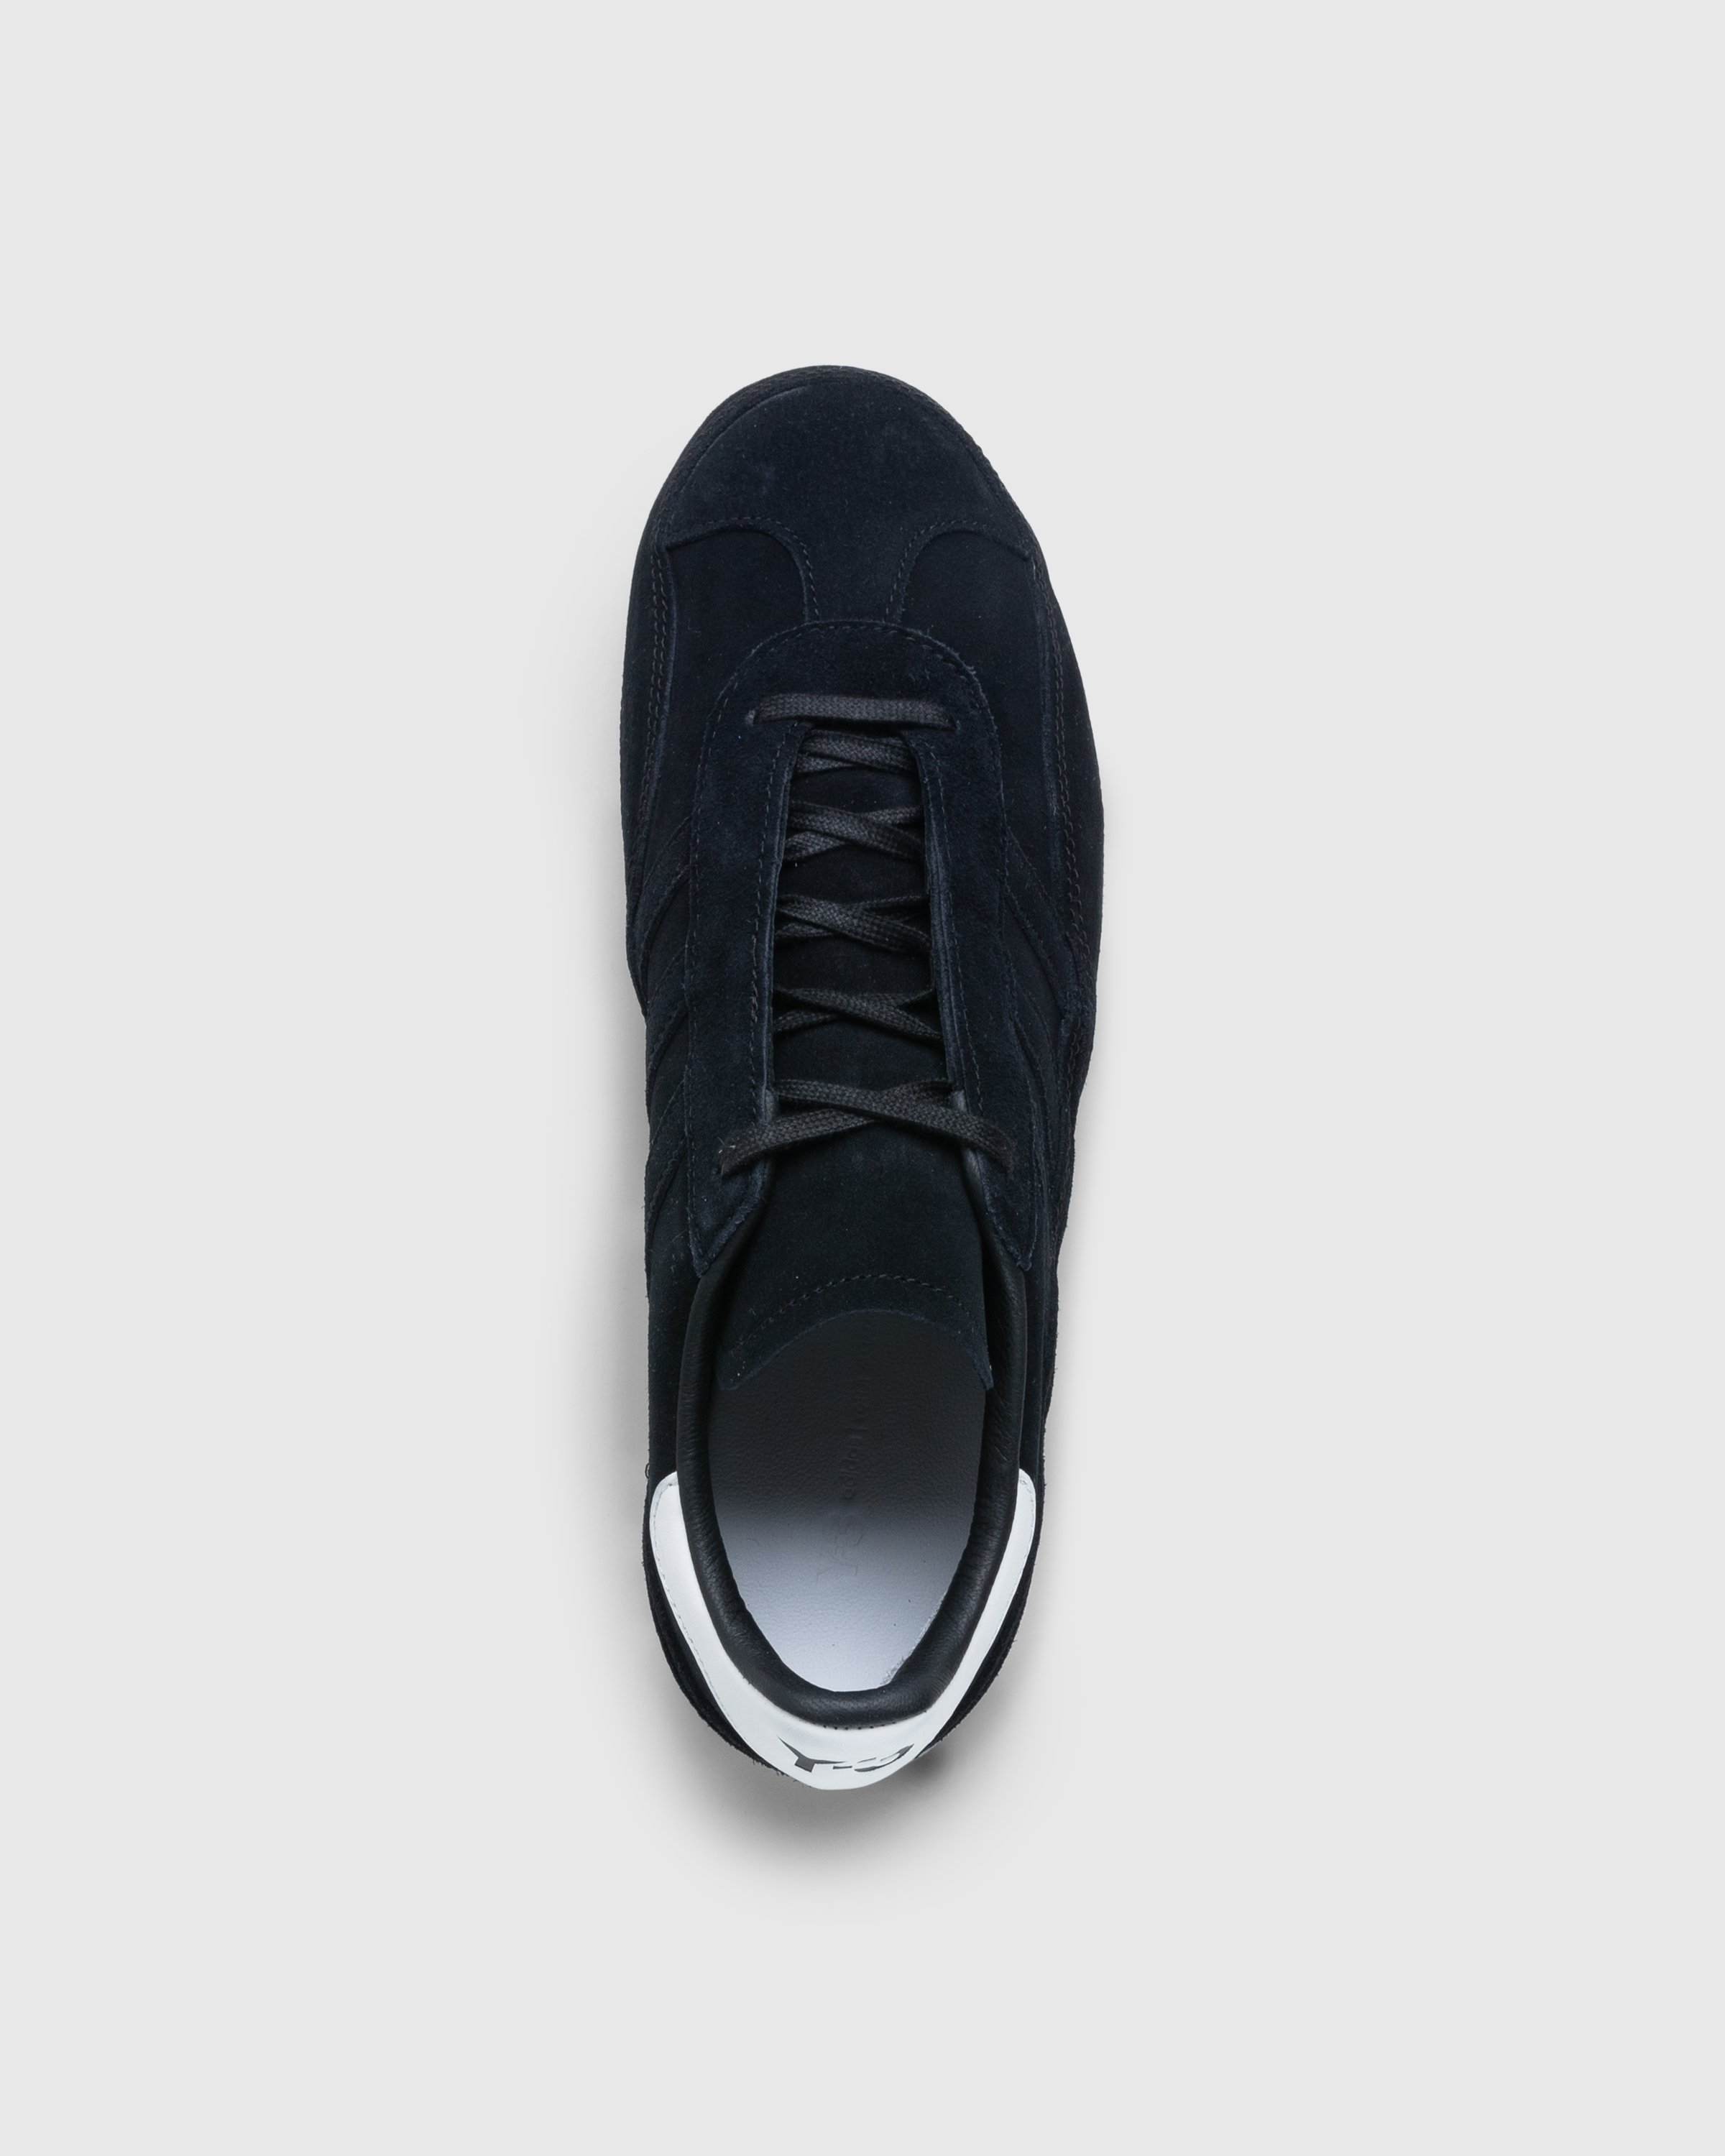 Y-3 - Gazelle Black - Footwear - Black - Image 5